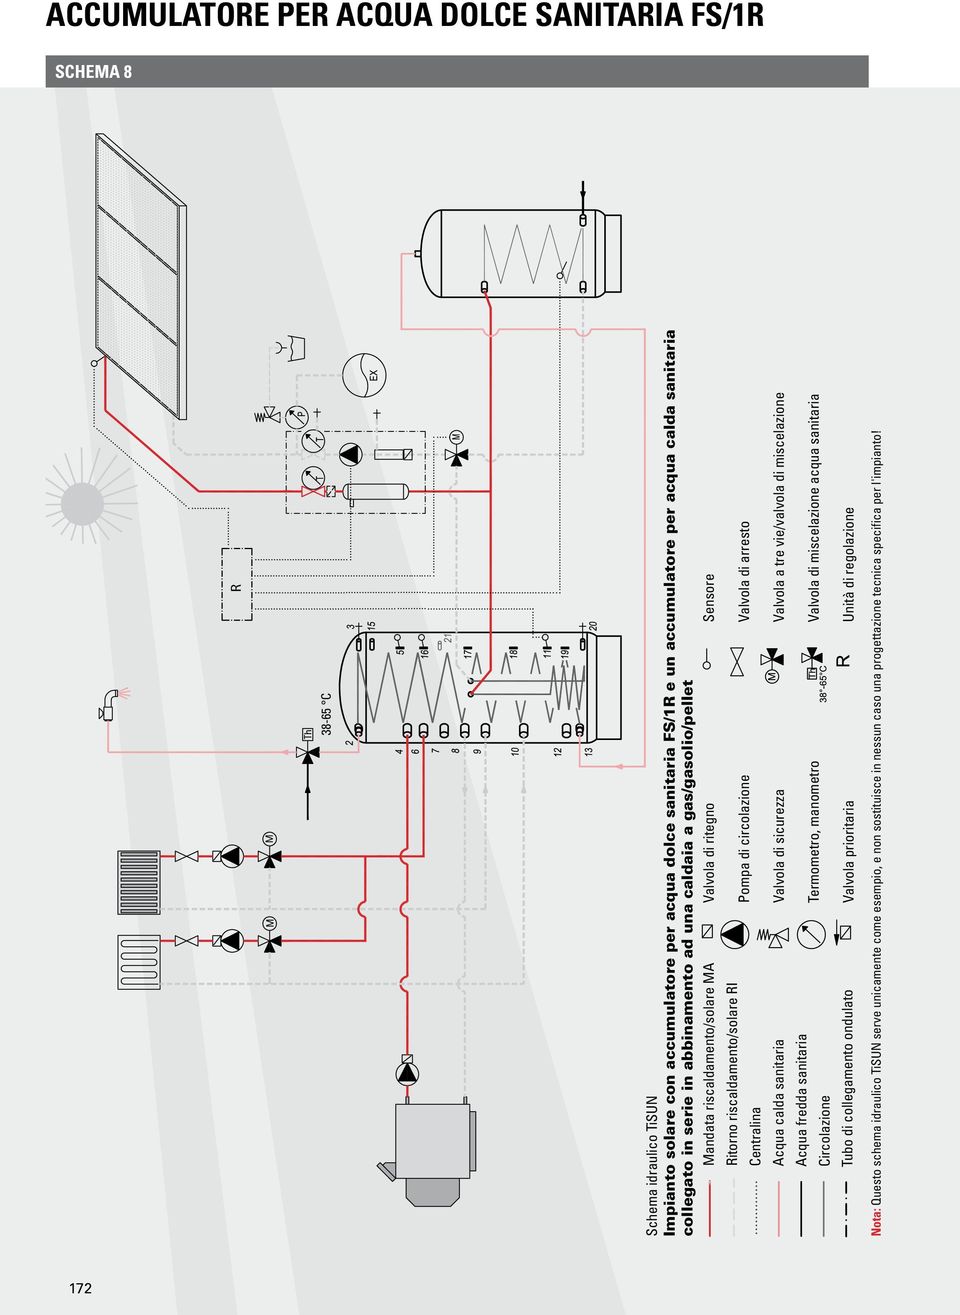 FS/1R e un accumulatore per acqua calda sanitaria collegato